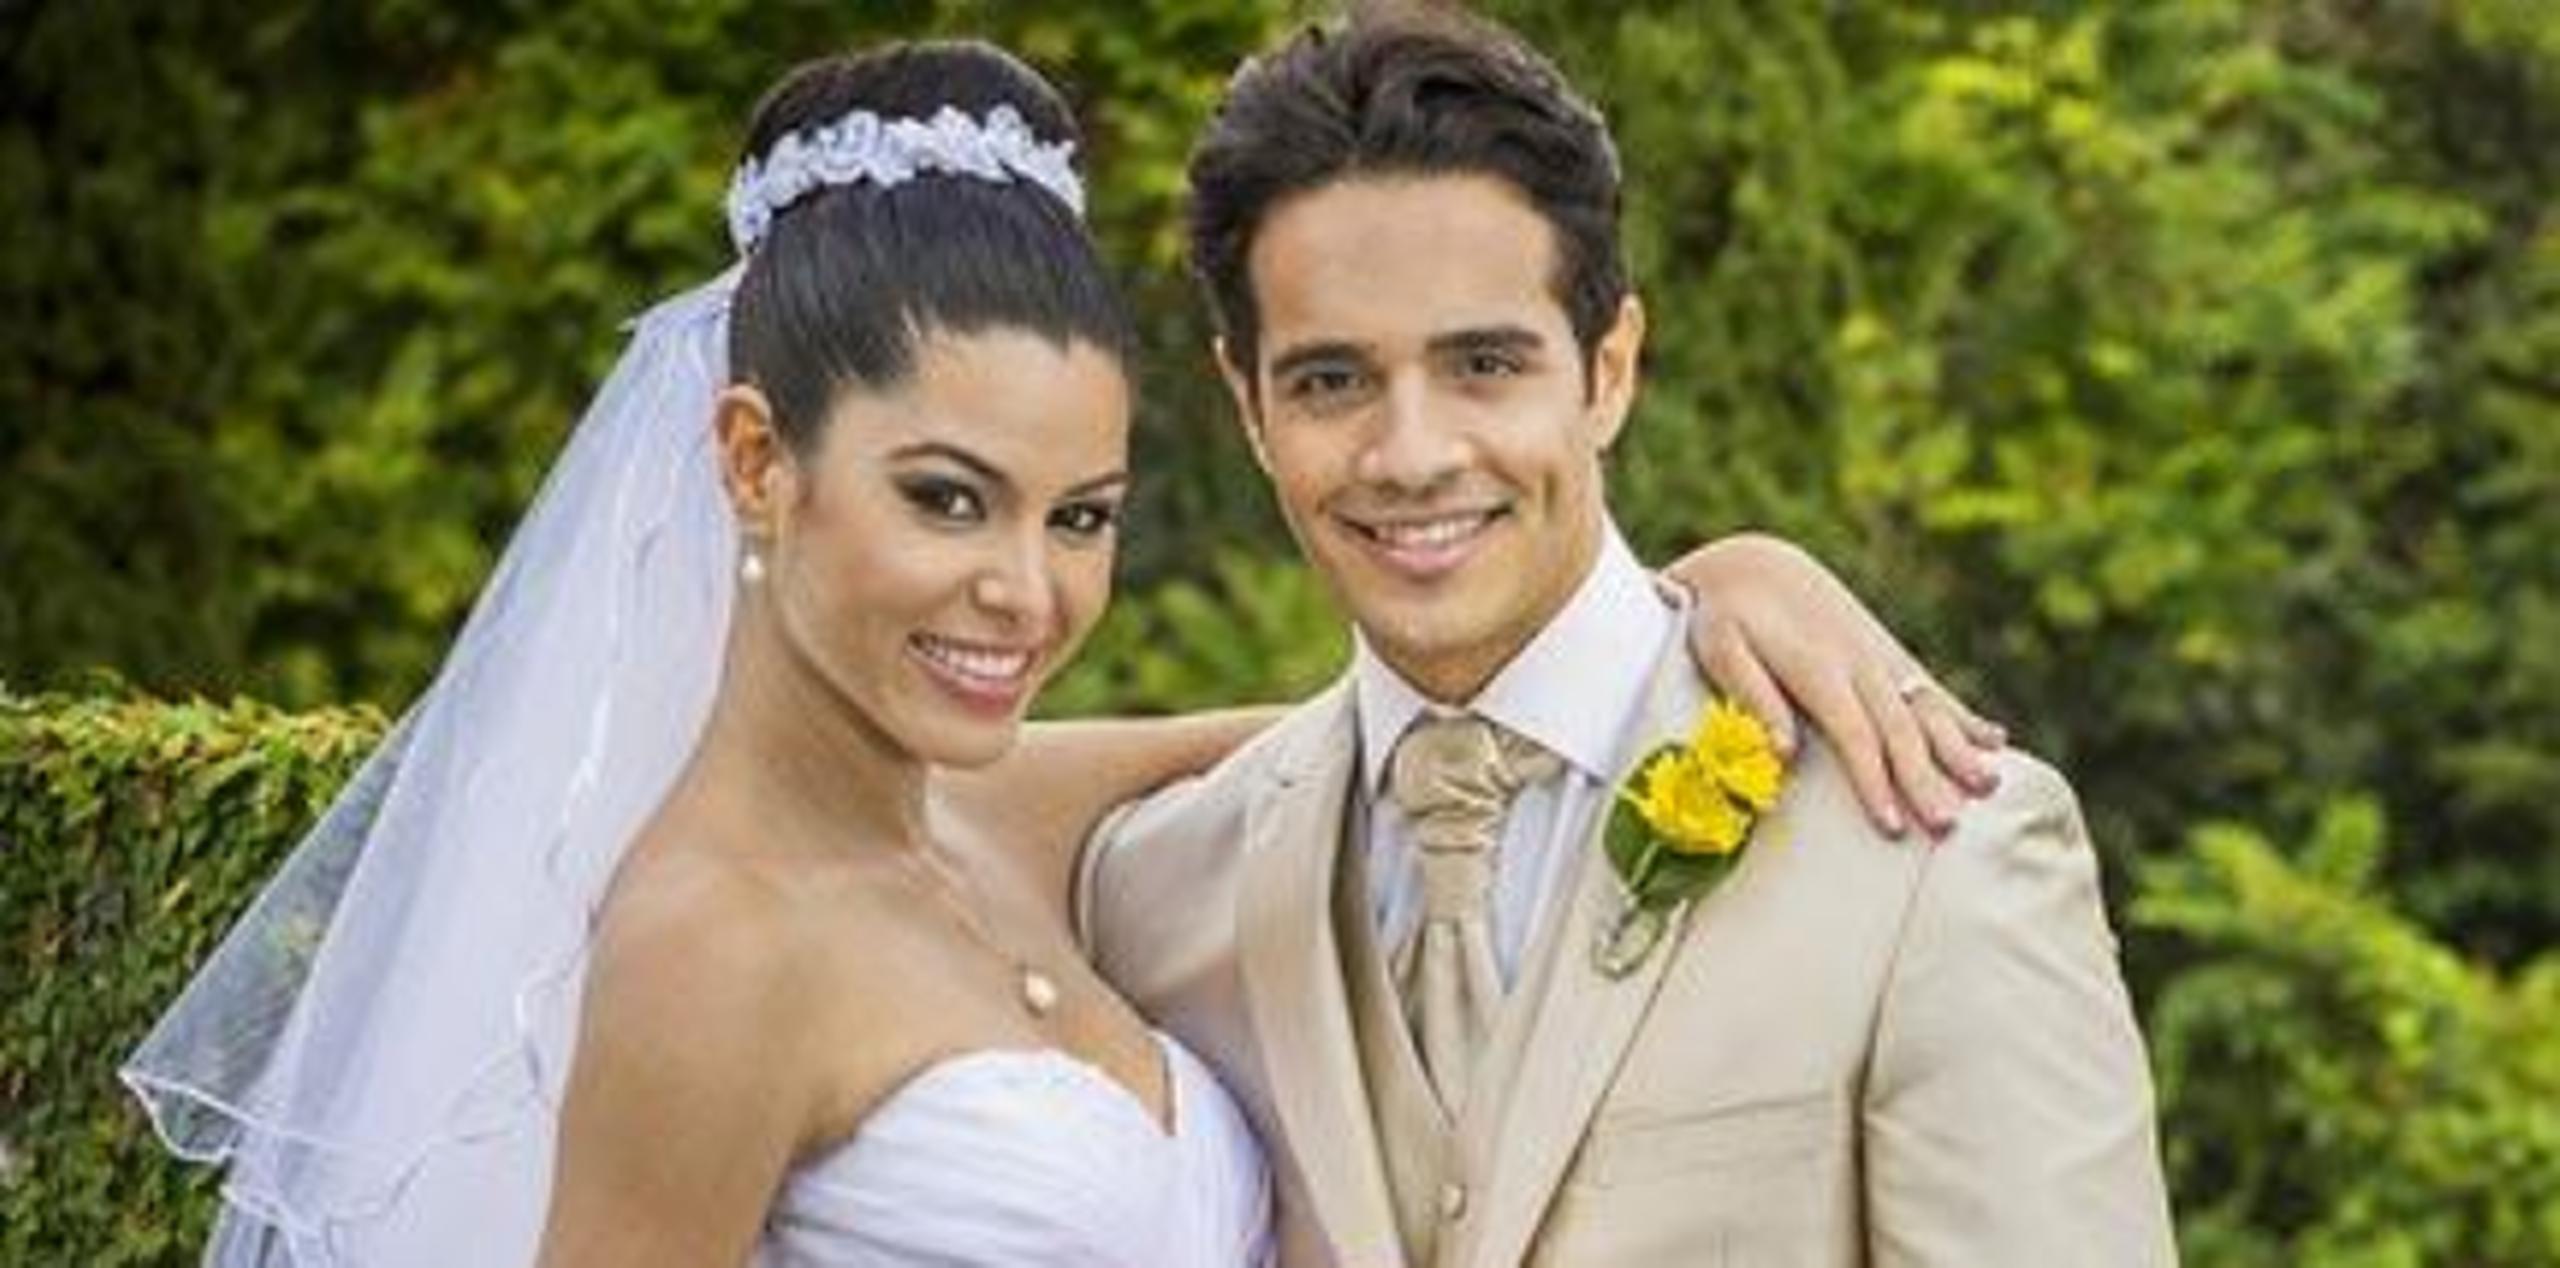 Yara La Santa, Miss Mundo de Puerto Rico 2010, y Éktor Rivera, egresado del programa de música Objetivo fama, se casaron en el 2013. (Archivo)